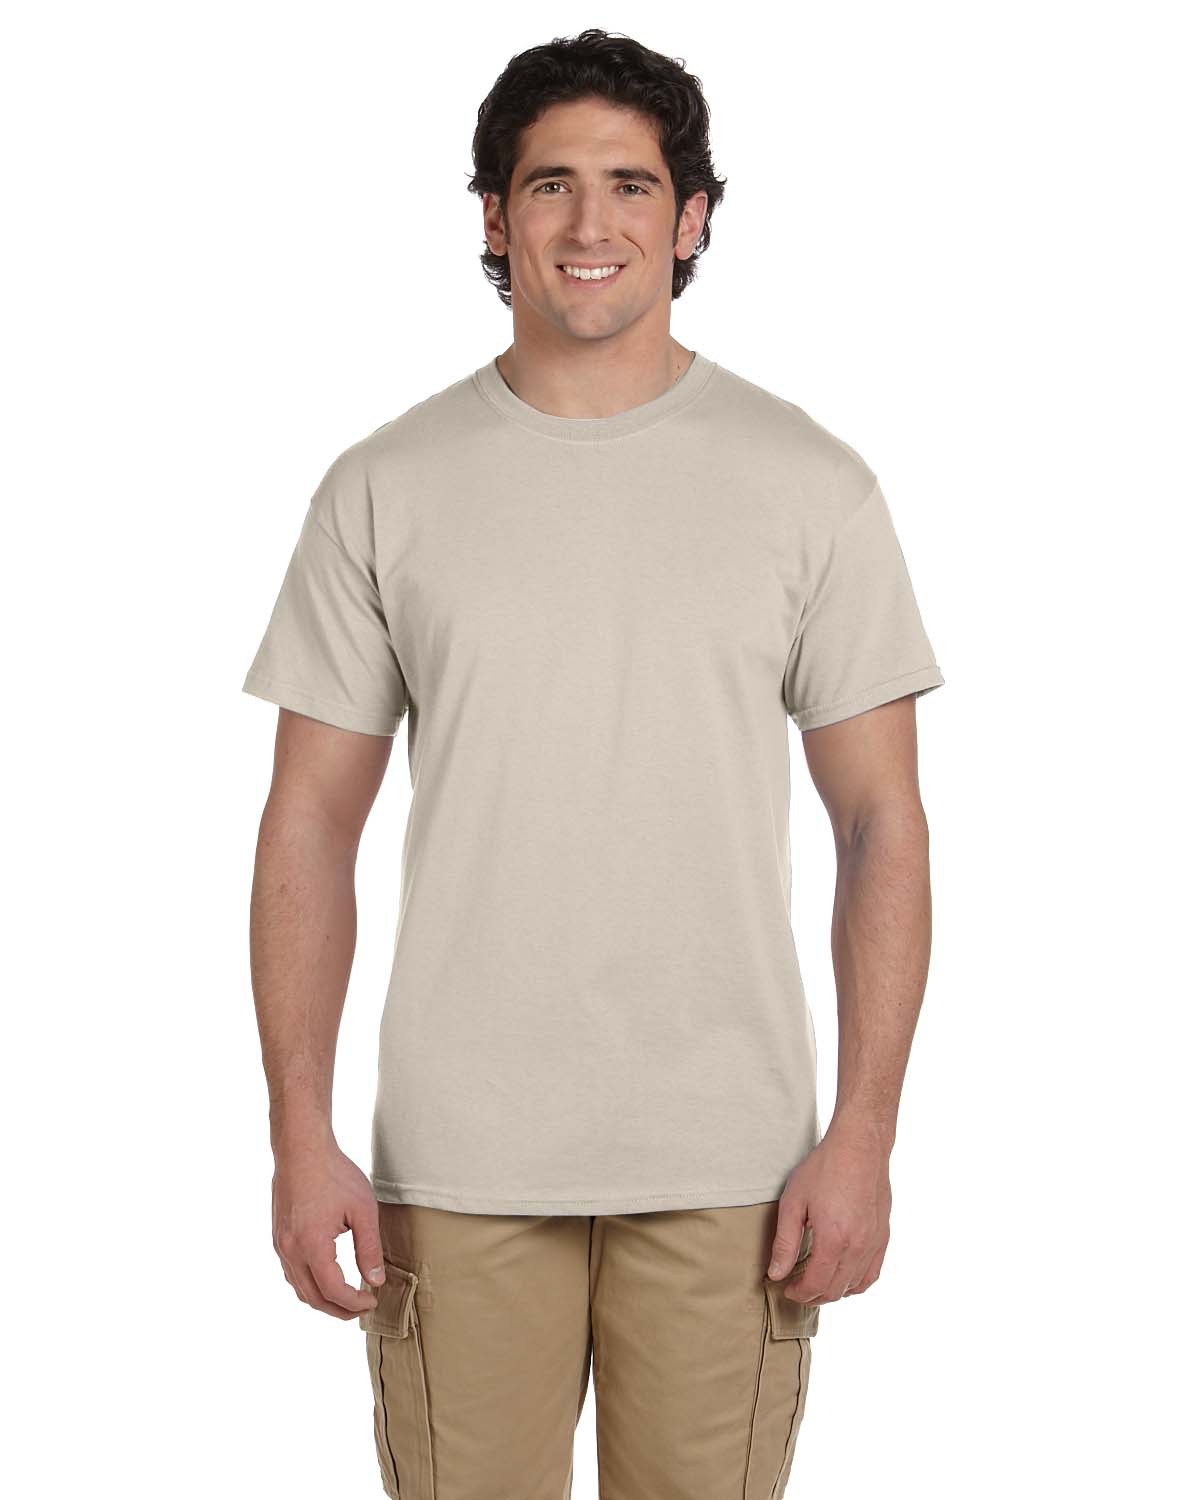 G200 T-Shirt S Gildan Cotton 6 oz Cornsilk